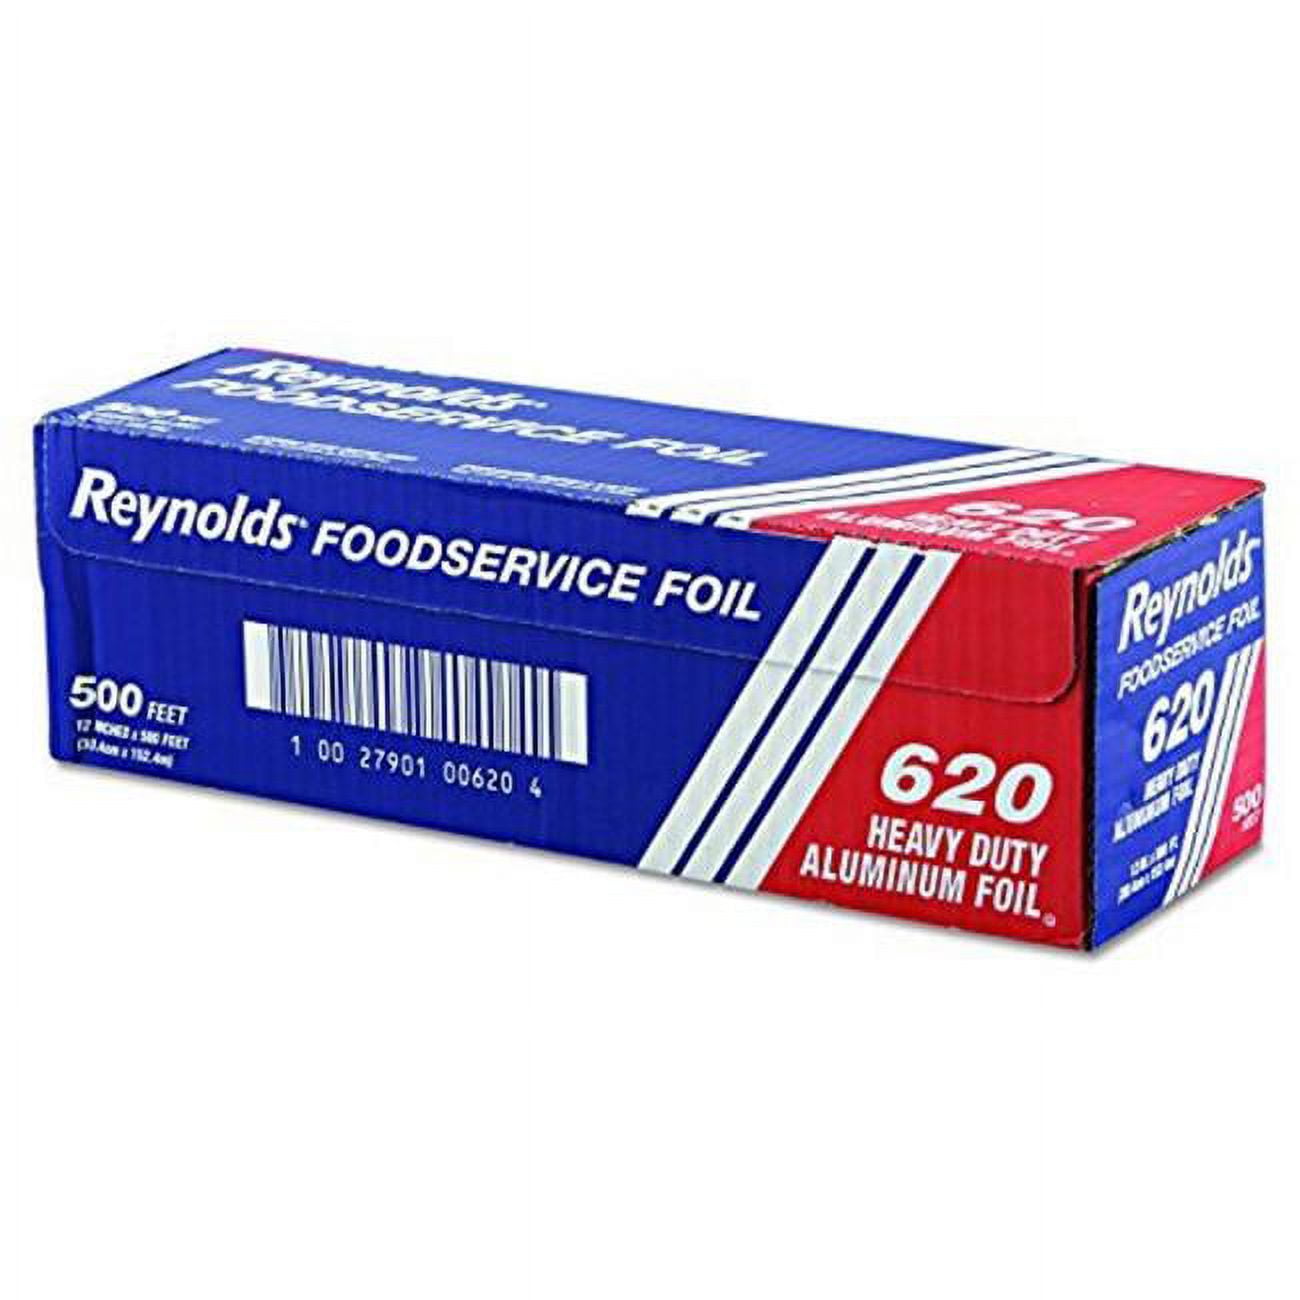 Reynolds 620 Cpc 12 In. X 5 Ft. Heavy Duty Aluminum Foil